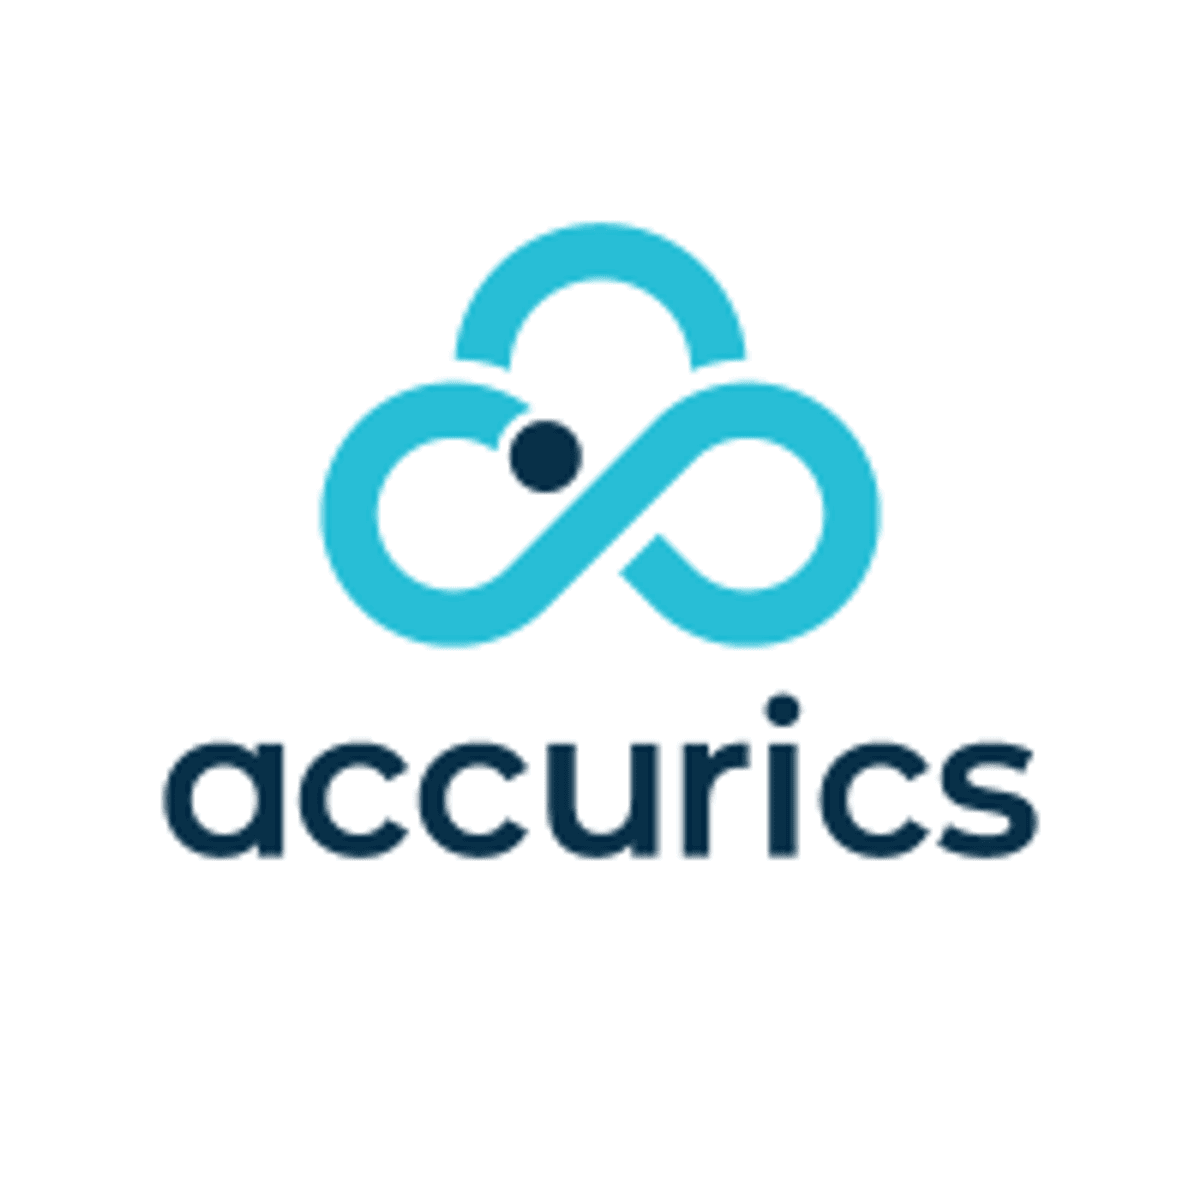 Accurics haalt kapitaal op voor uitbouw cloud cyber resilience aanbod image